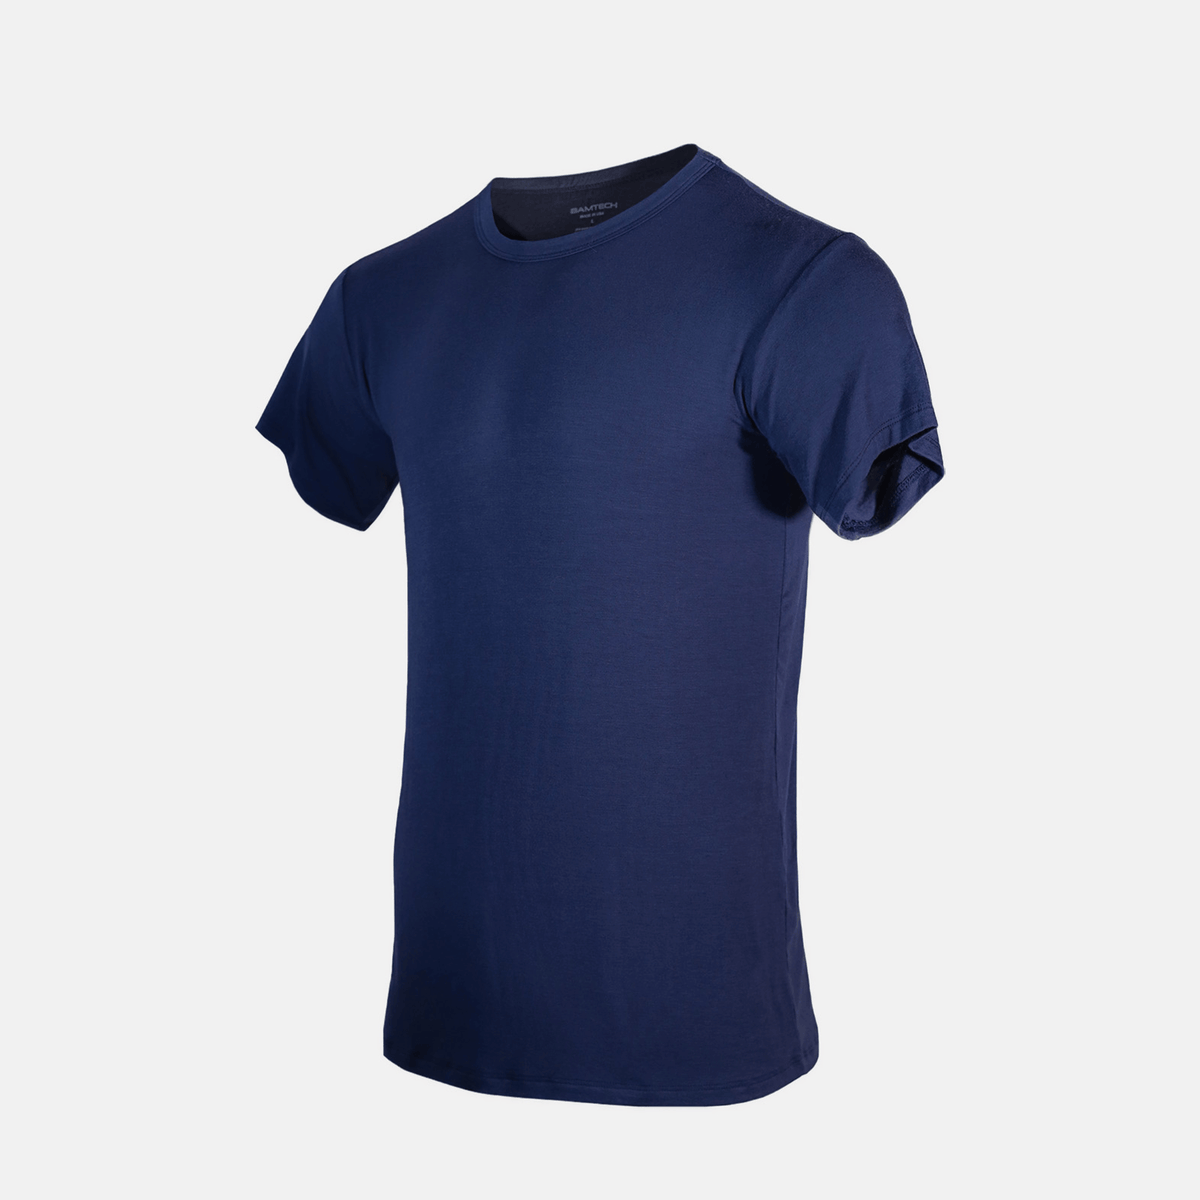 Bamboo Aerotech T-Shirt - Navy Blue M / Navy Blue